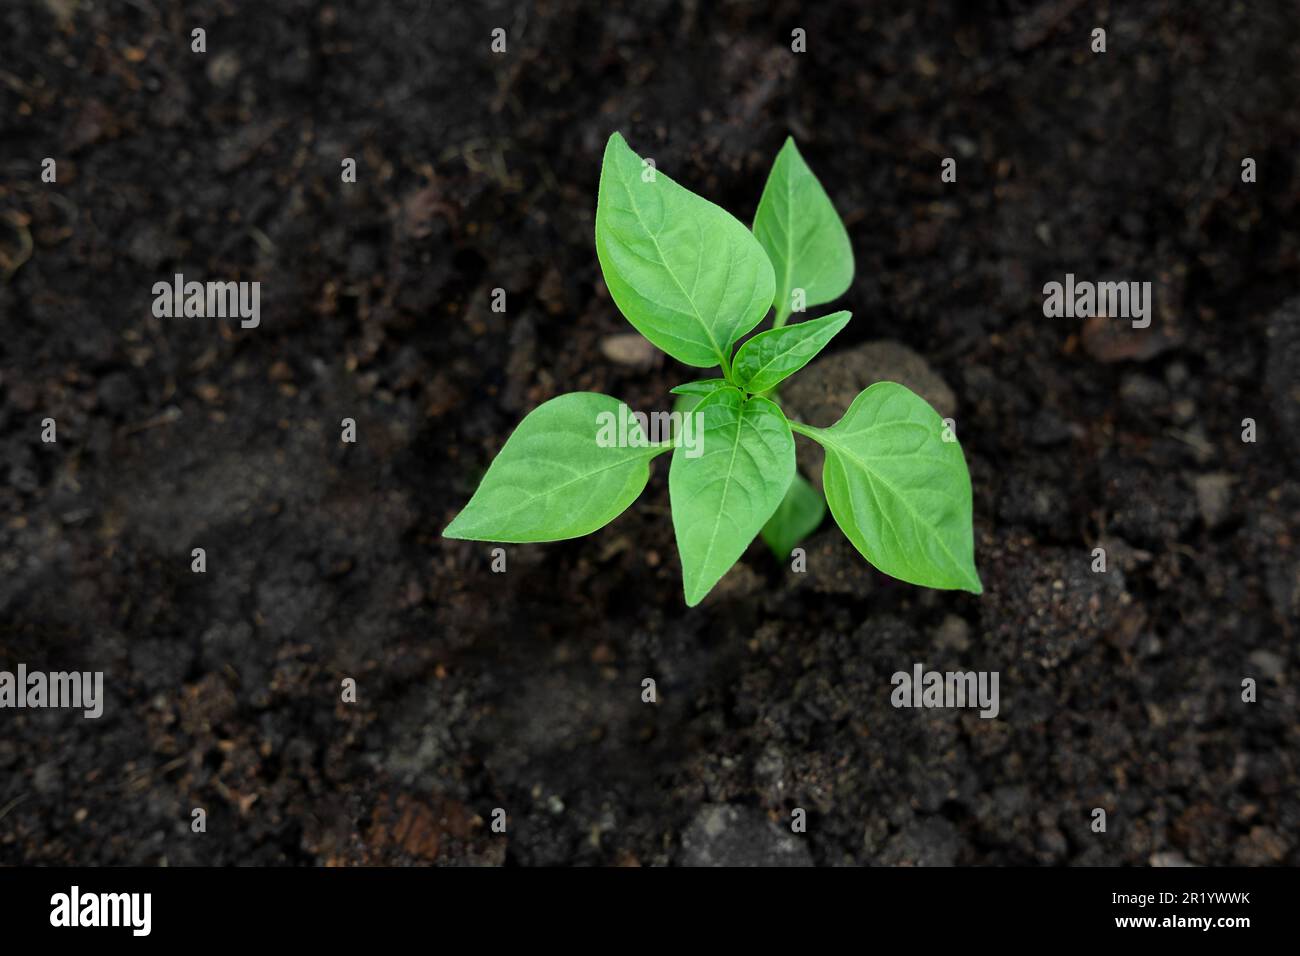 Jeune plante de poivre vert poussant dans un sol de fertilité noir. Vue de dessus, au-dessus de la tête. Le semis de légumes est dans la terre fertile. Maquette de jardinage. moc de la ferme Banque D'Images